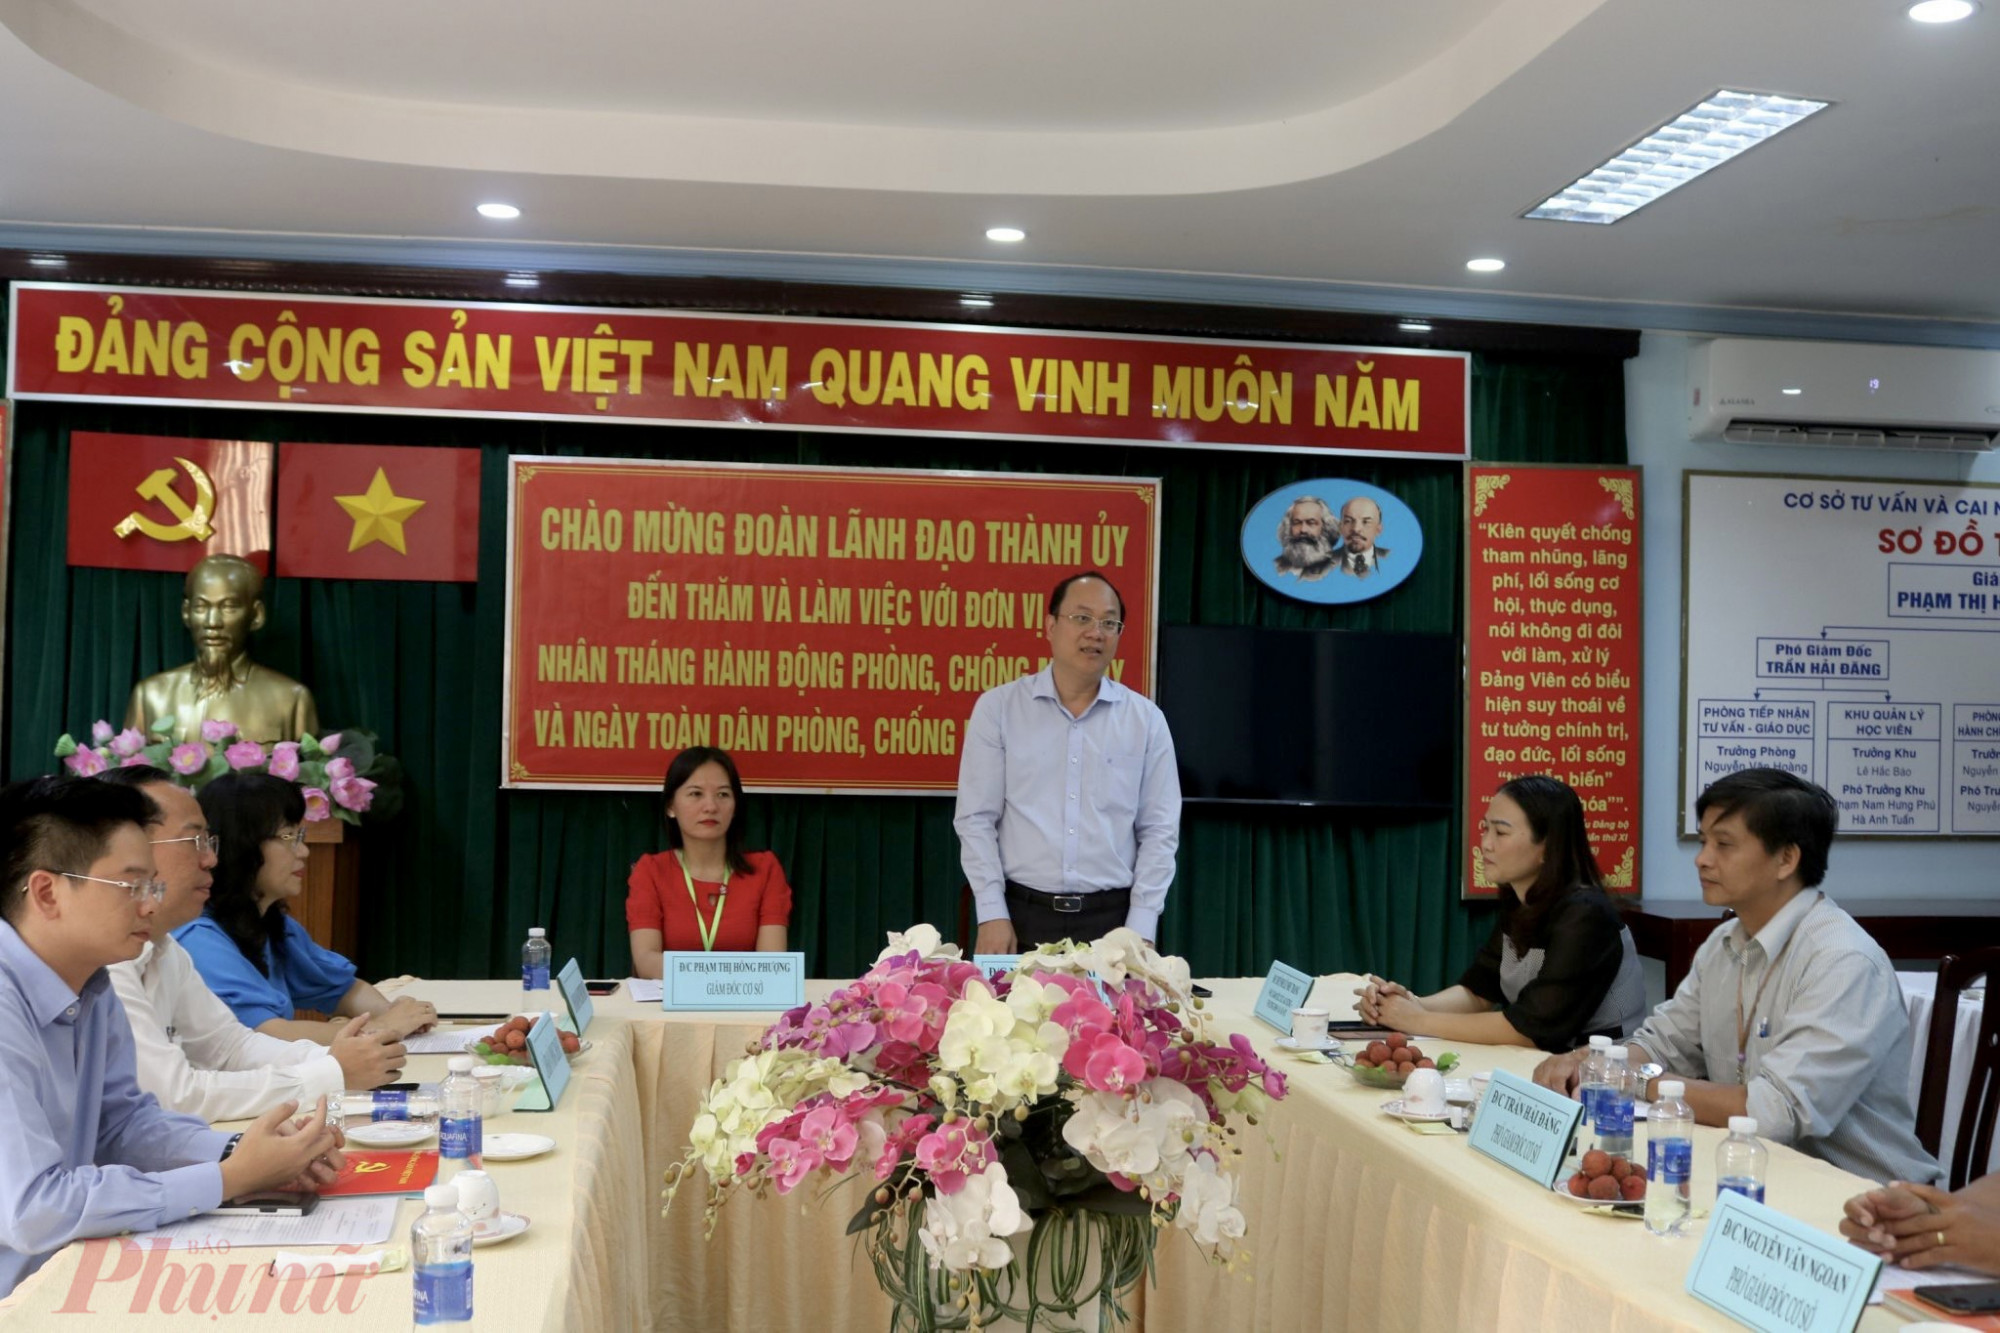 Ông Nguyễn Hồ Hải, Phó Bí thư Thành ủy TPHCM làm việc tại Cơ sở tư vấn và cai nghiện ma túy Bình Triệu (quận Bình Thạnh, TP HCM)